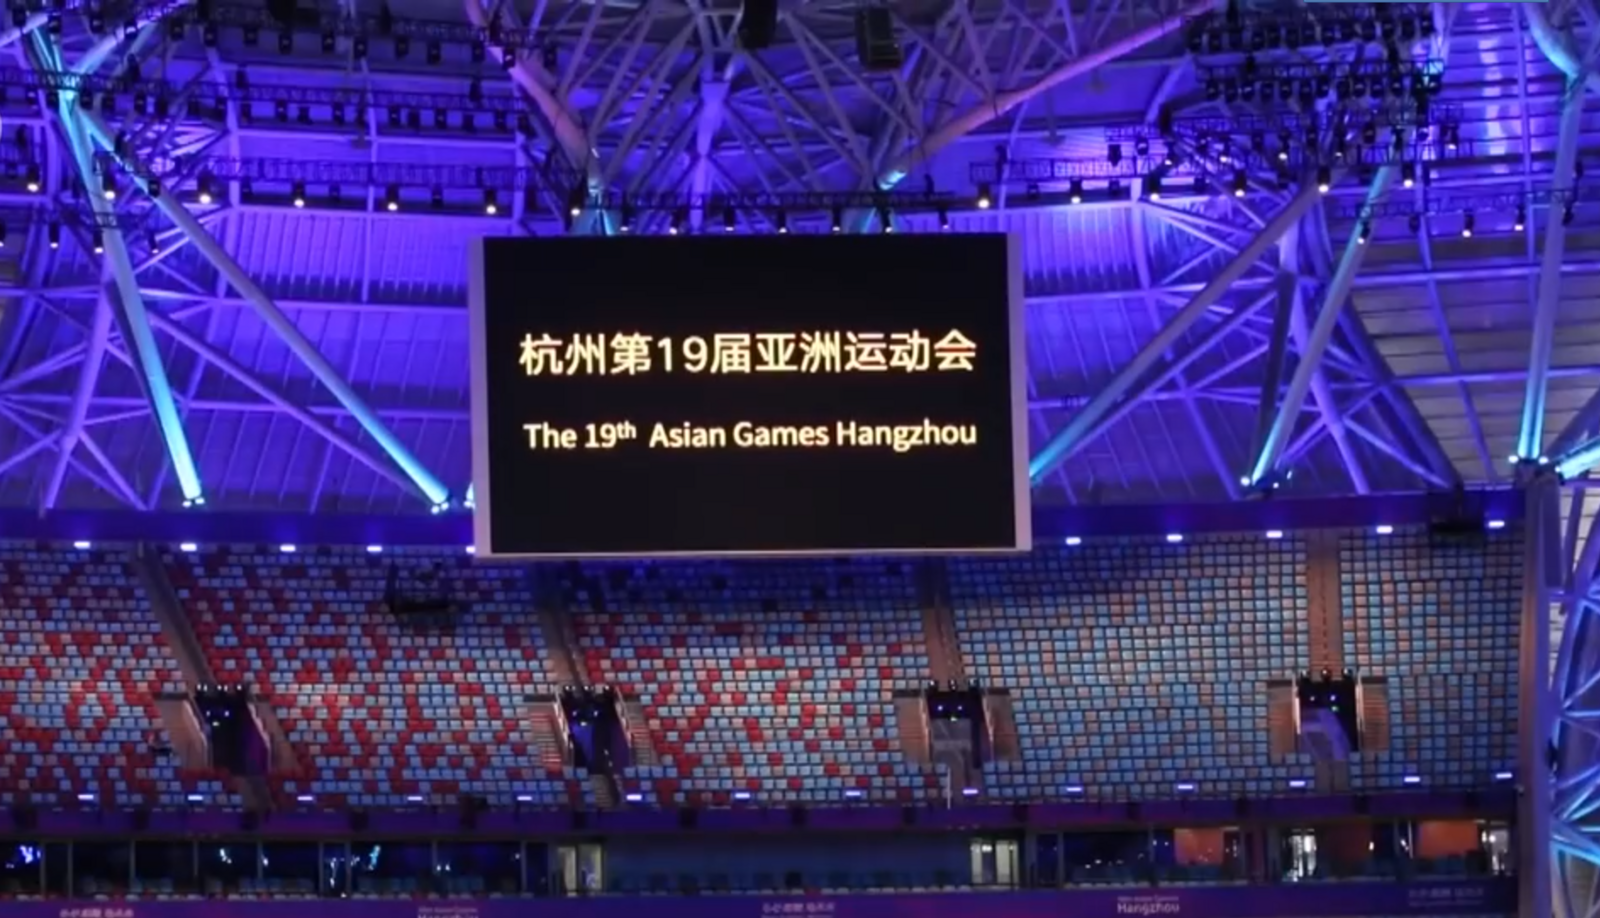 火炬点燃方式创意满满！杭州亚运会开幕式第一次正式彩排顺利完成